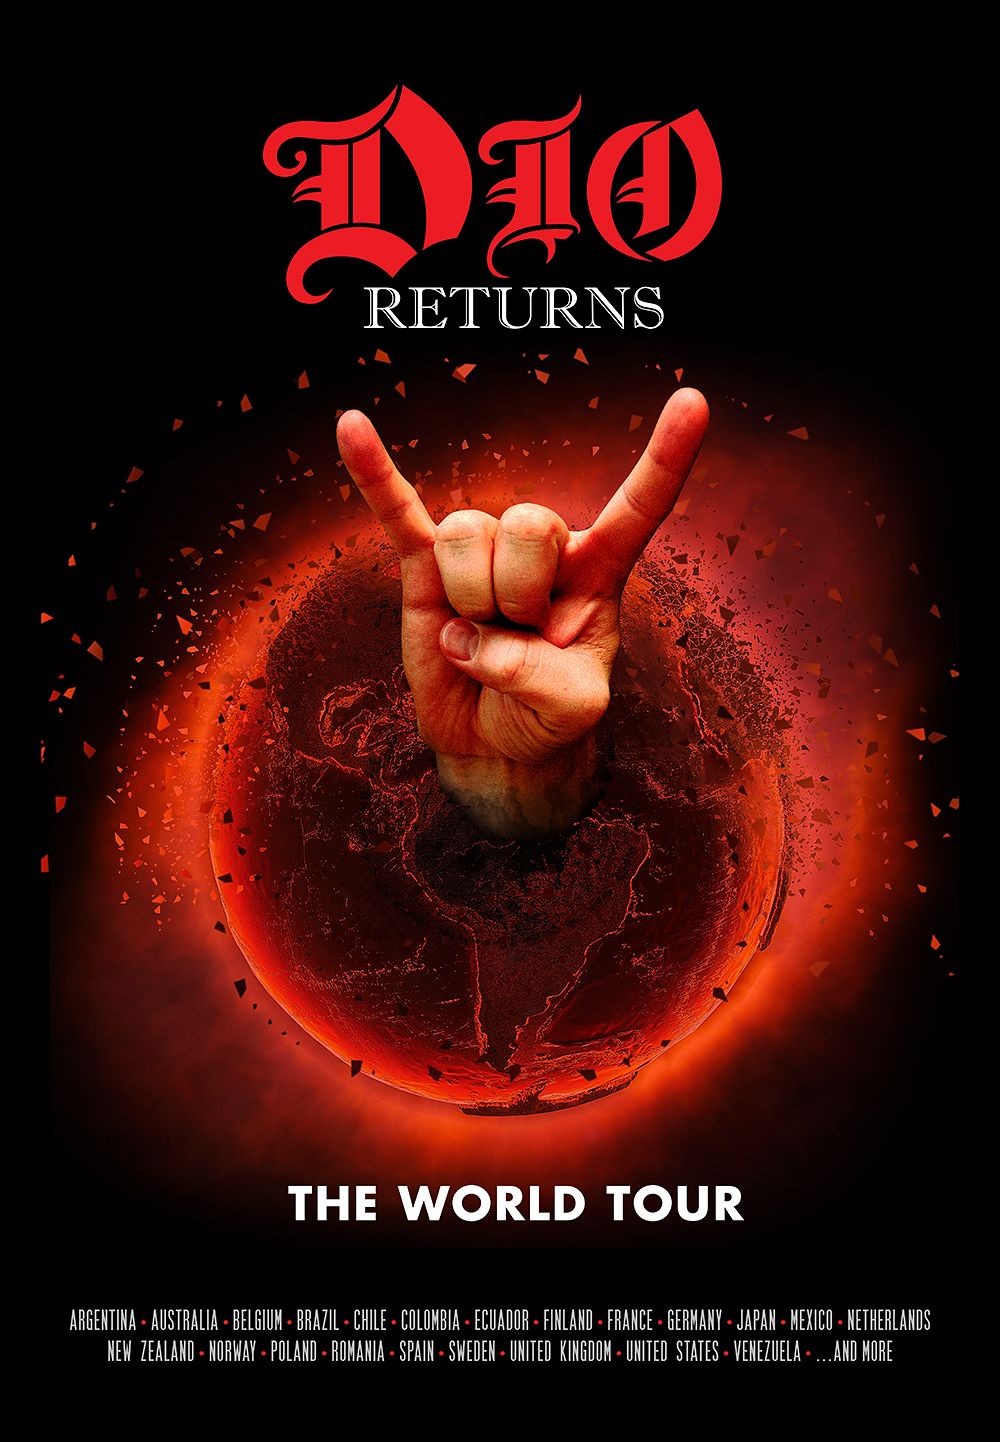 Ronnie James Dio: "Dio Returns"-Hologramm-Tour beginnt im Dezember